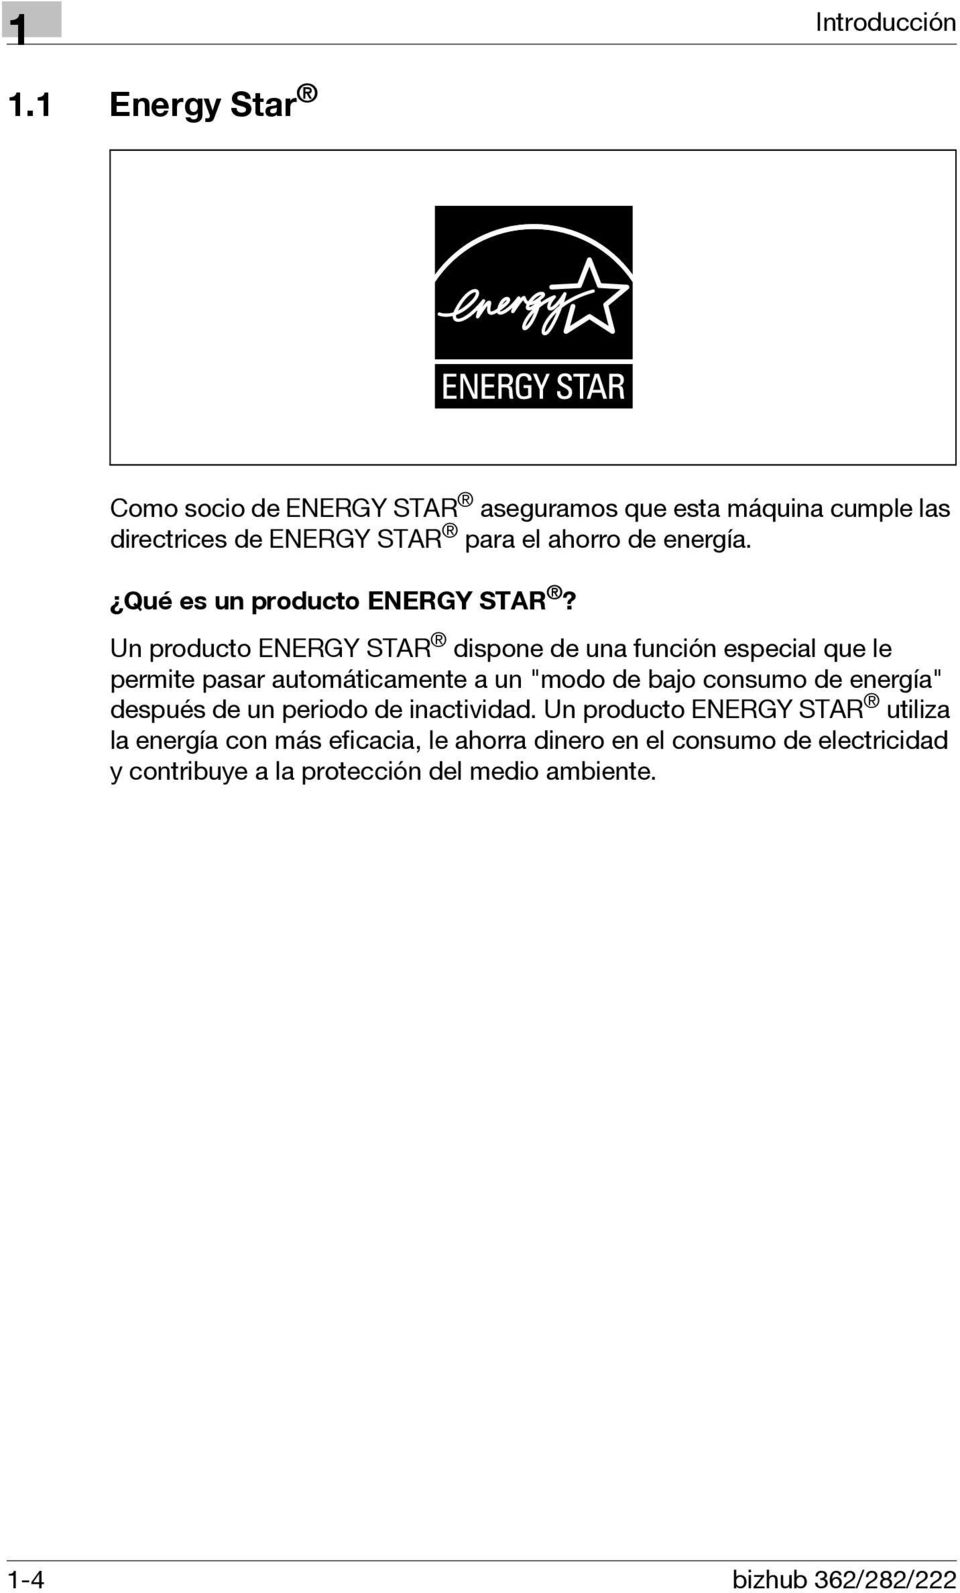 Qué es un producto ENERGY STAR?